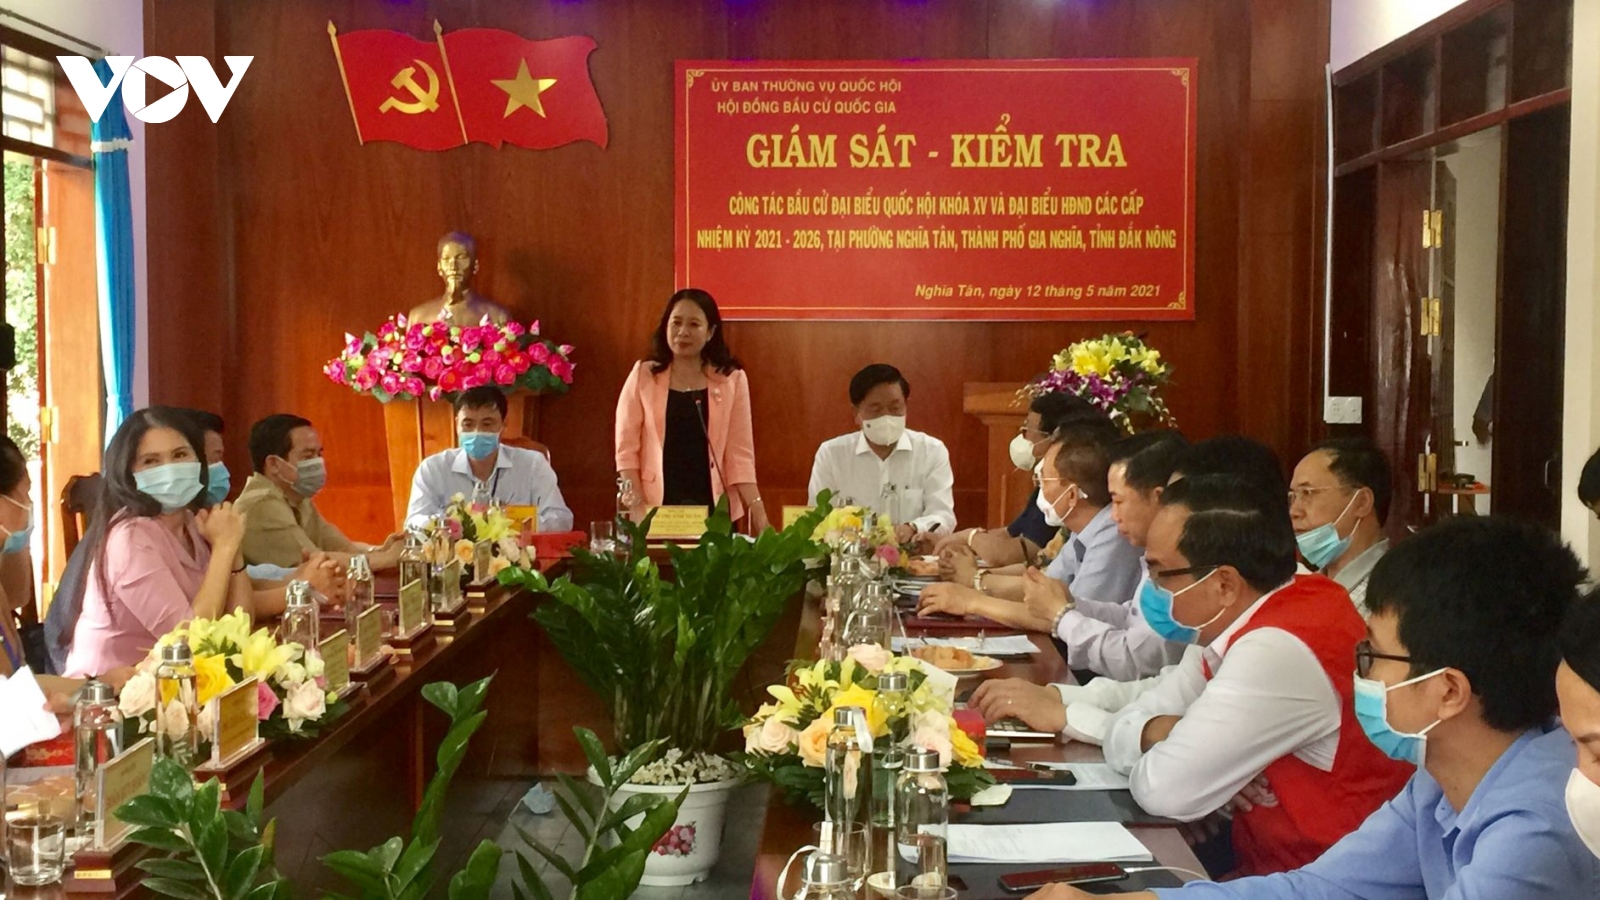 Phó Chủ tịch nước giám sát, kiểm tra công tác bầu cử tại Đắk Nông